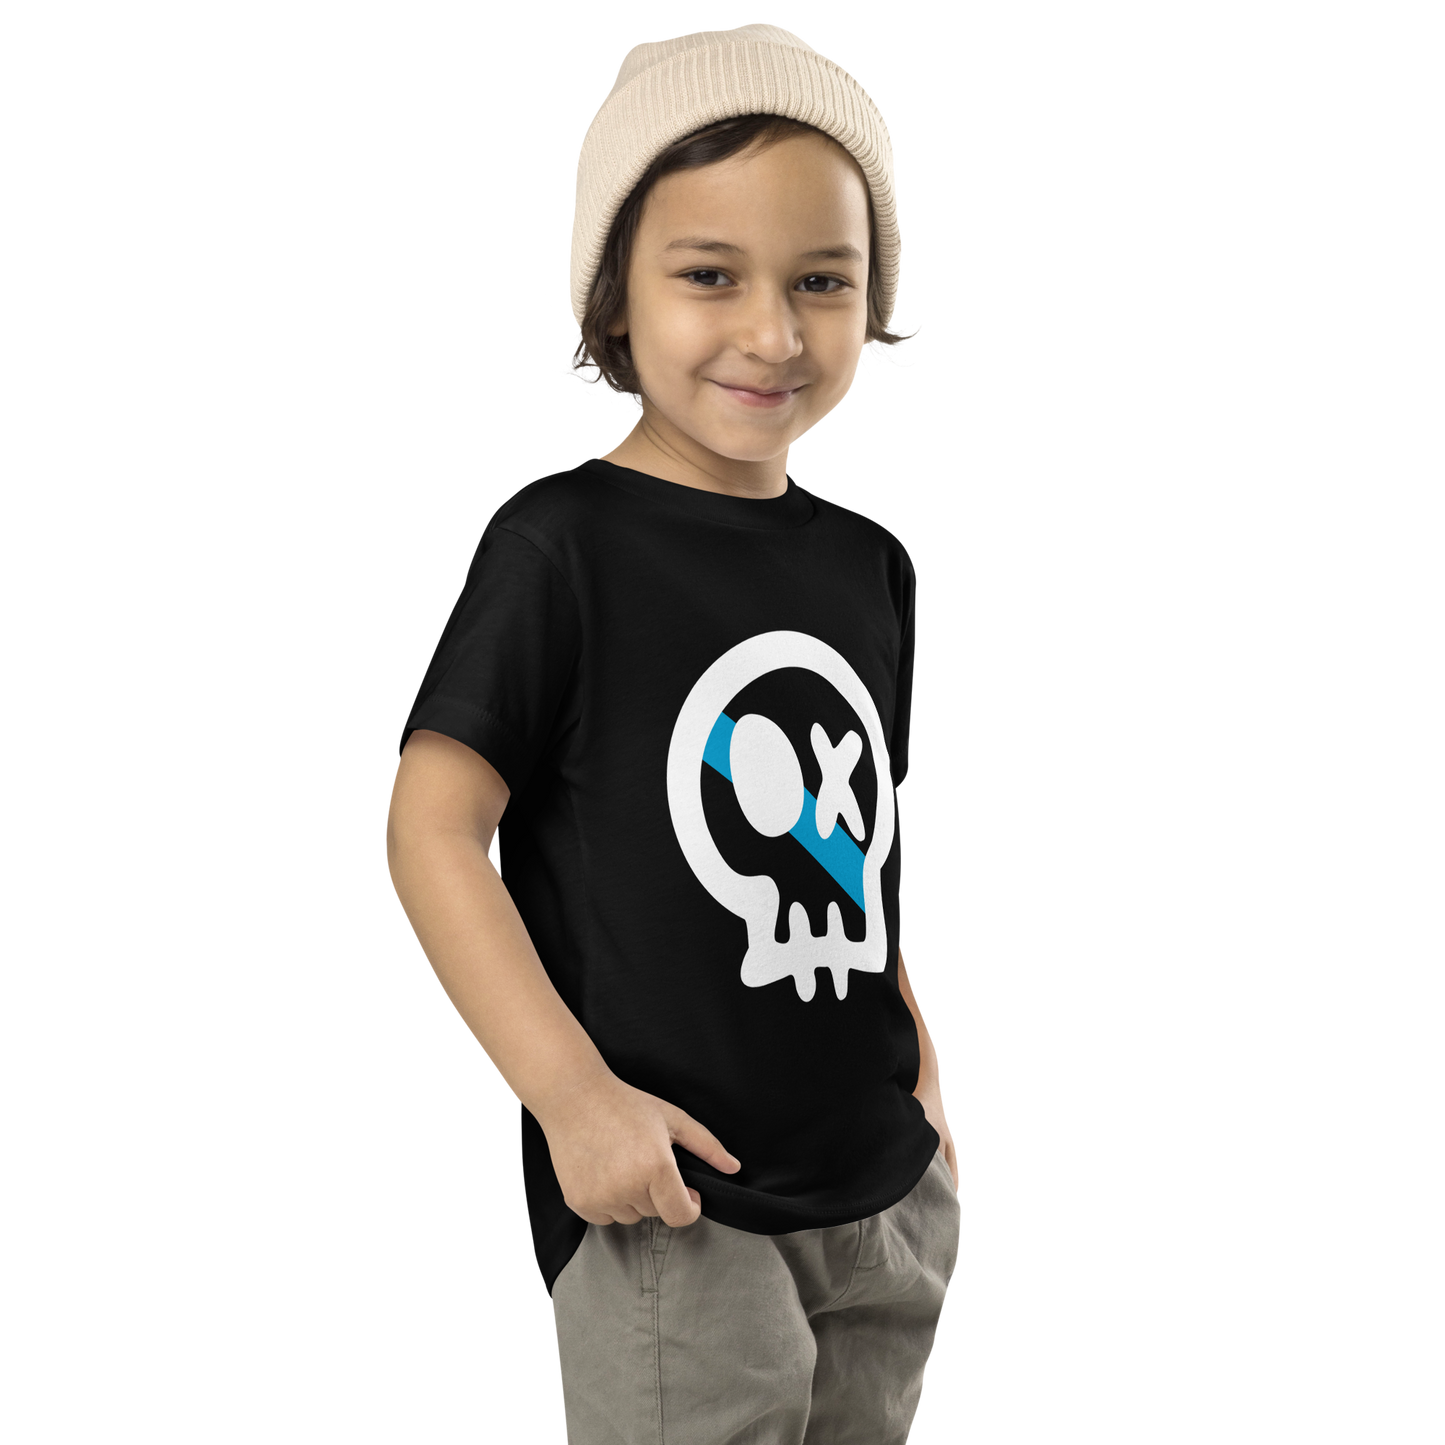 Camiseta infantil #RENS// Essential // Unisex